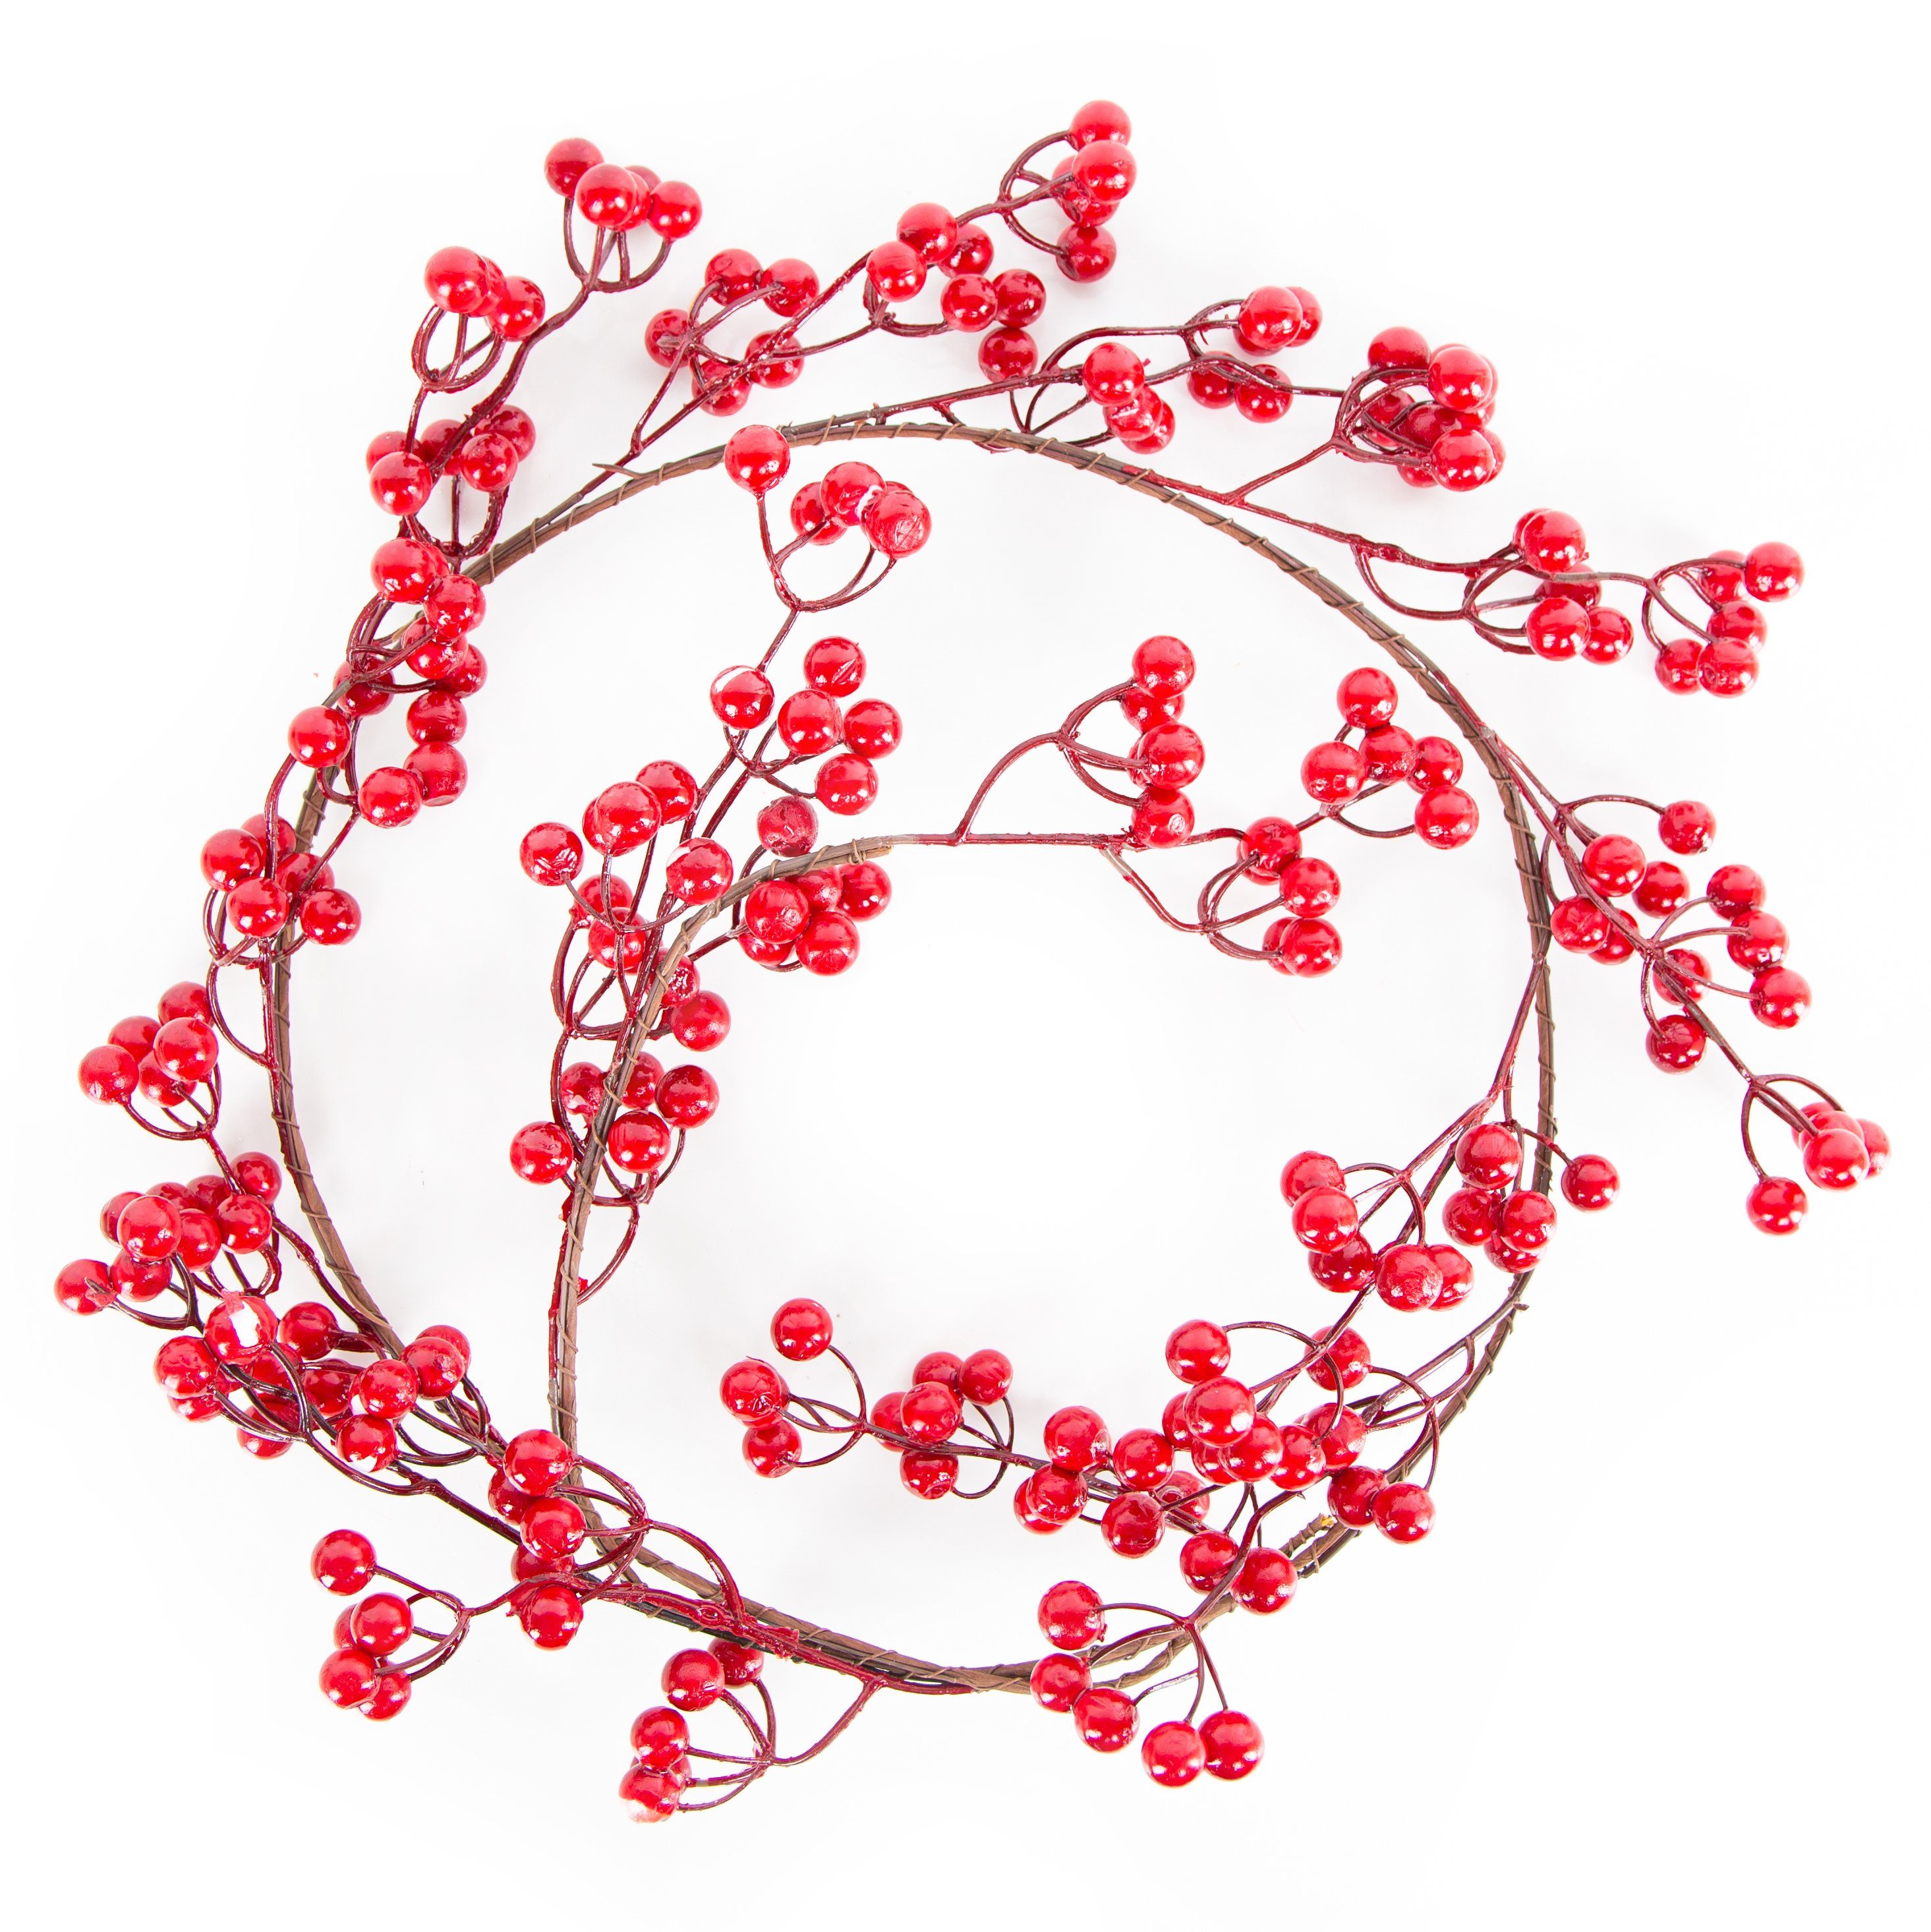 Girlande künstliche rote Beerengirlande Weihnachten, braune 130 Dekokranz Logbuch-Verlag Beeren mit cm roten